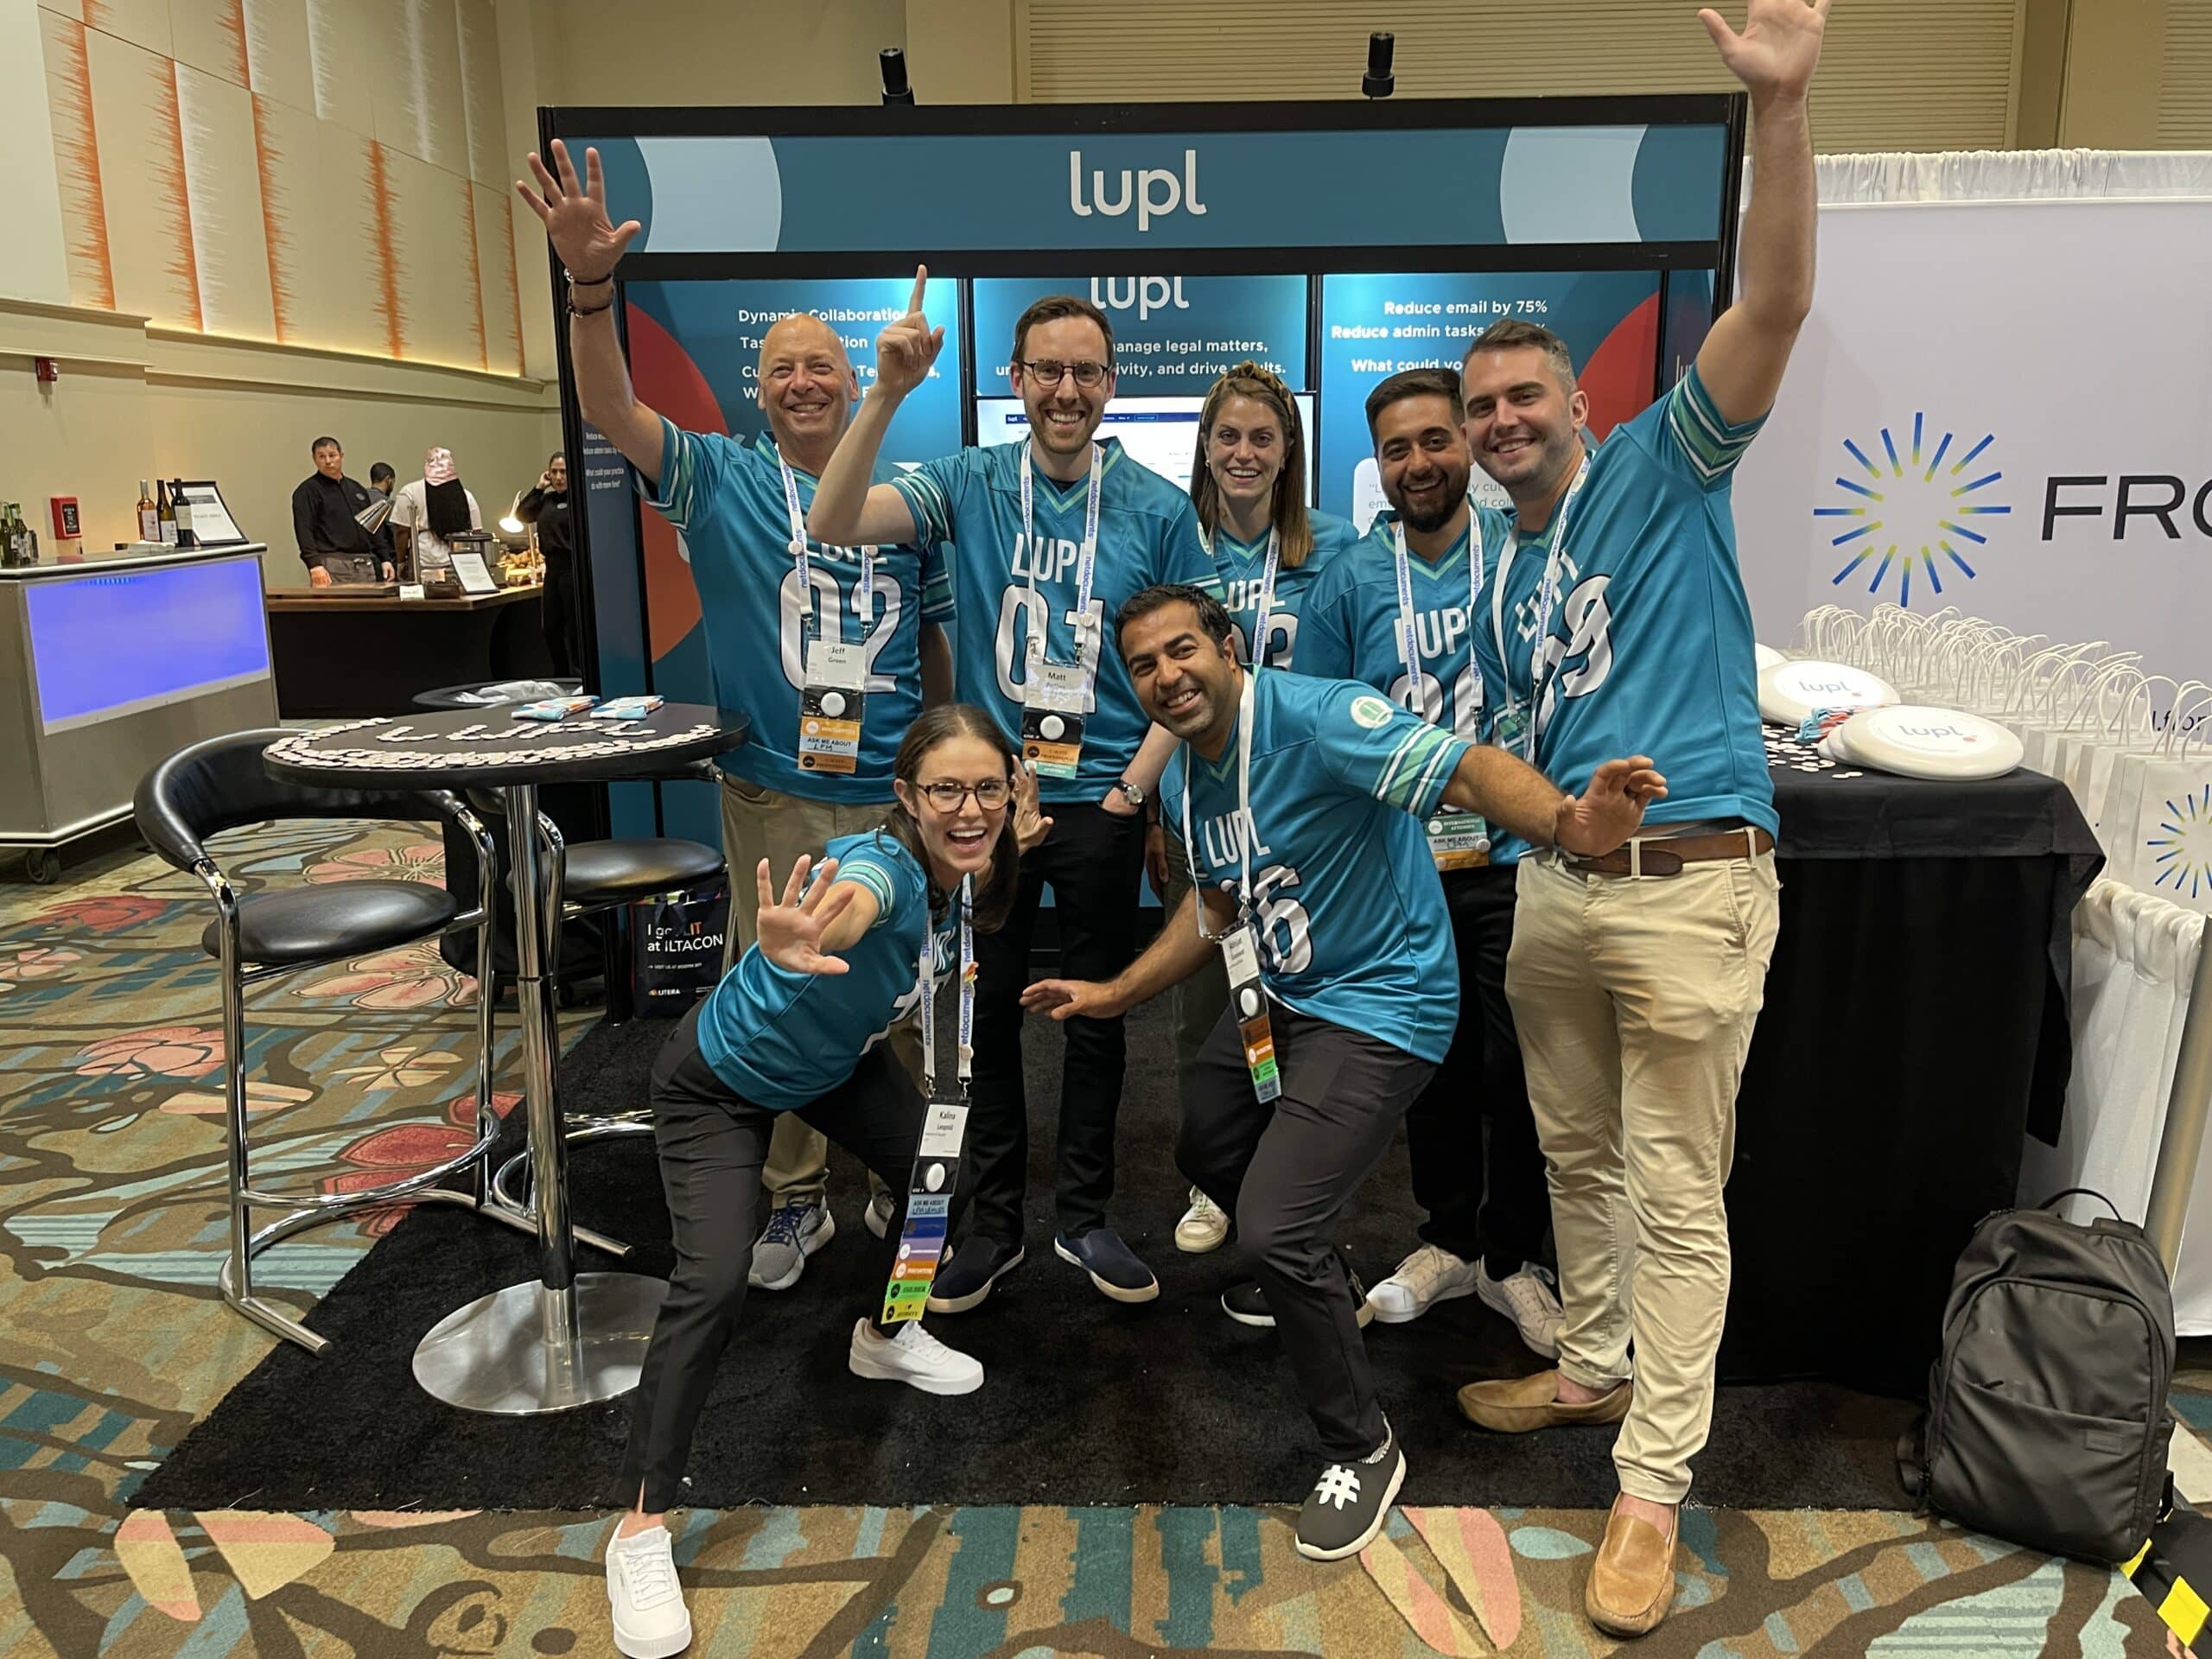 The Lupl team at ILTACON 2023